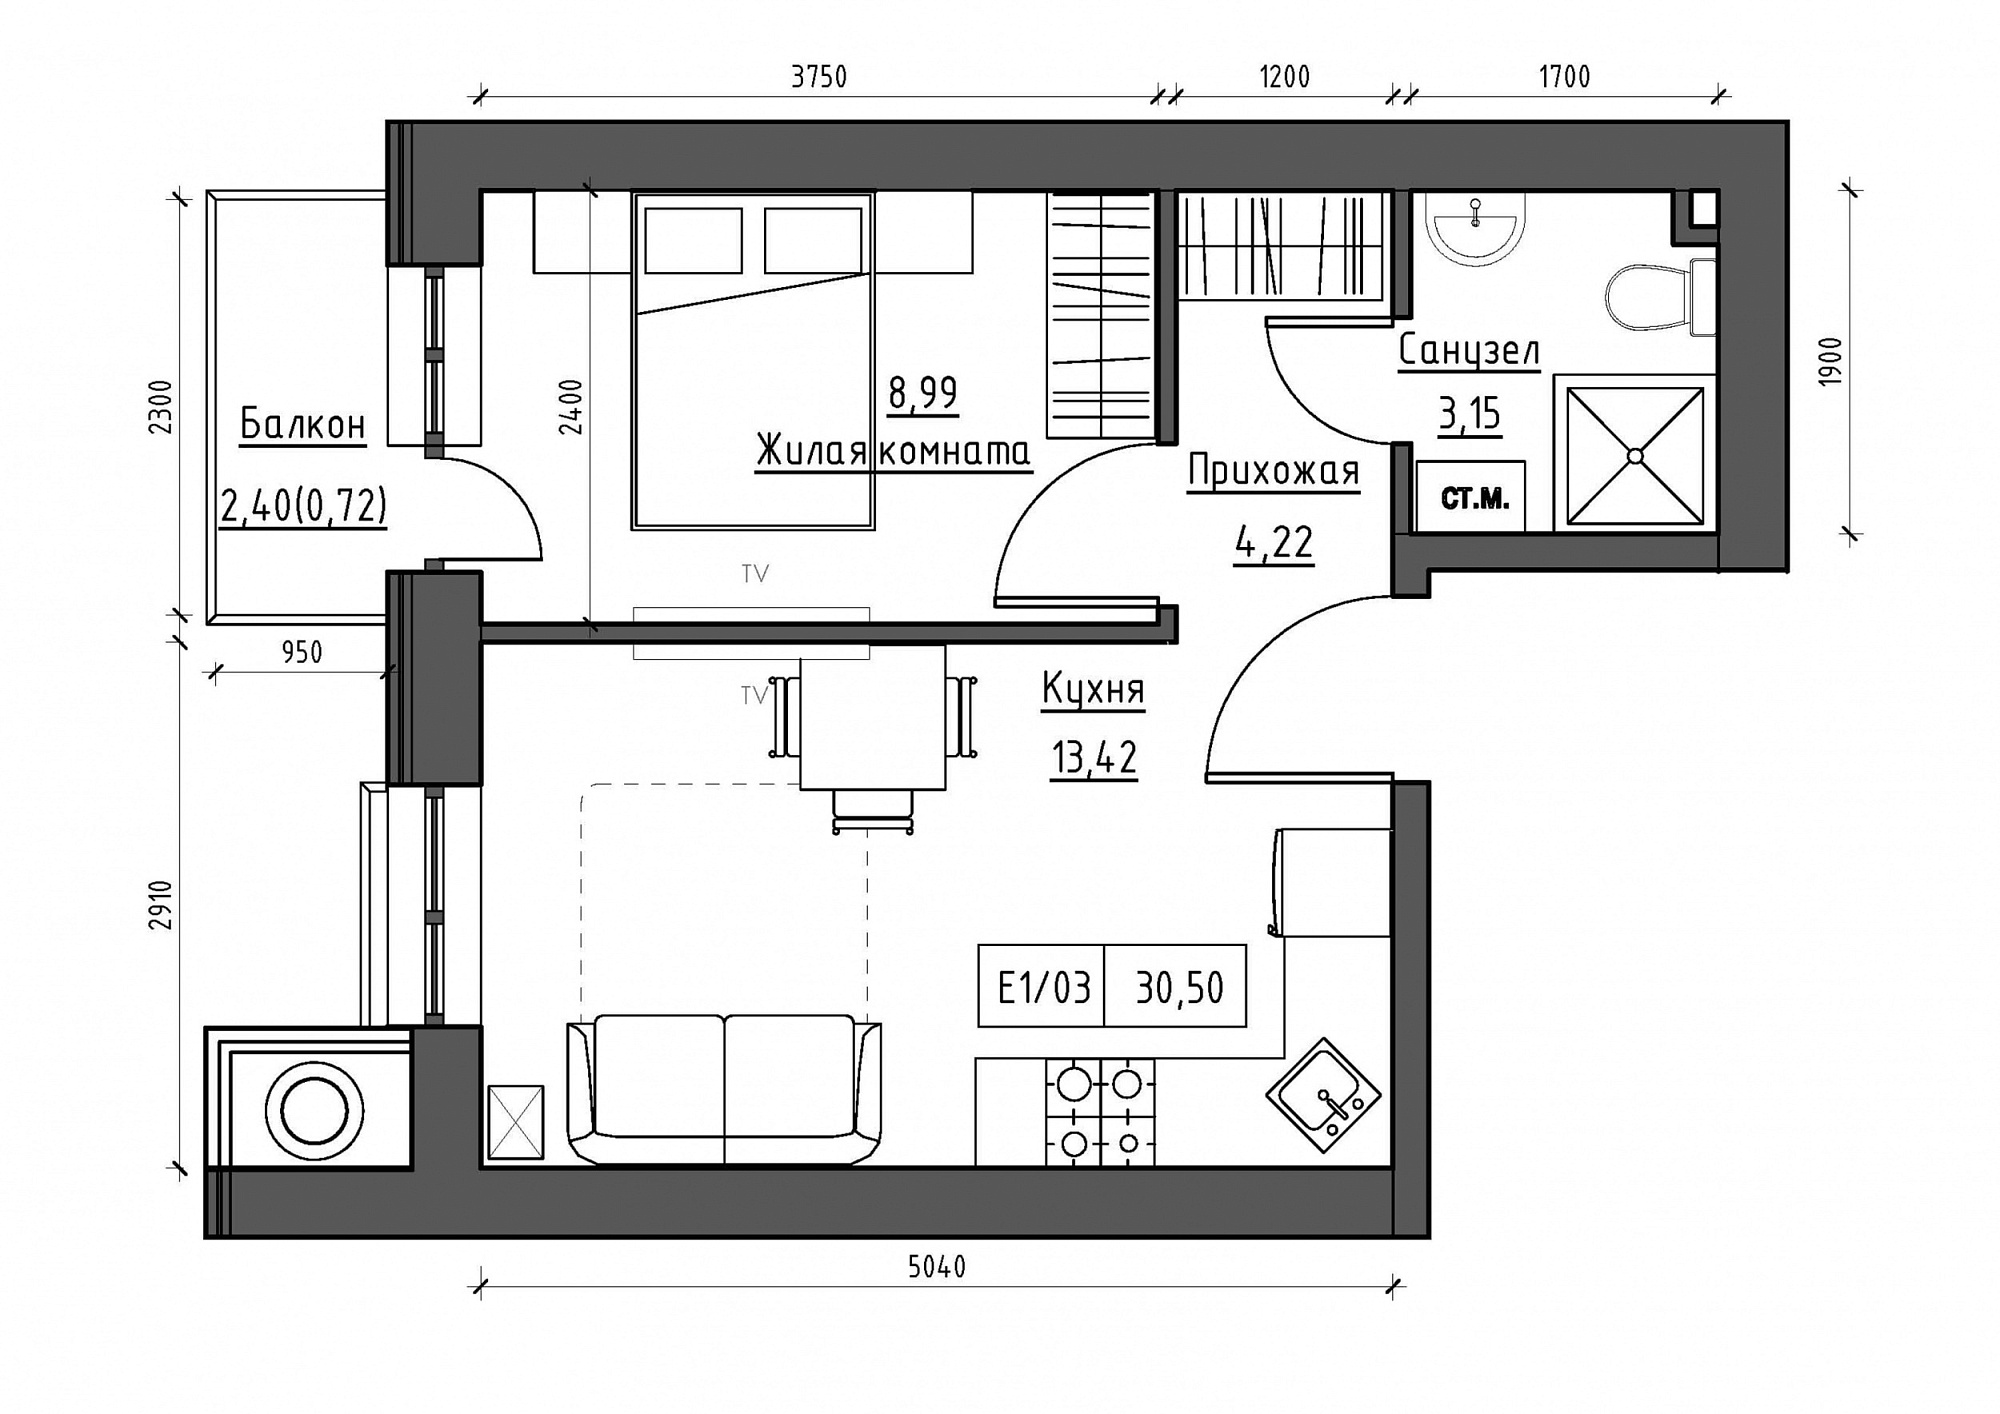 Планировка 1-к квартира площей 30.5м2, KS-011-02/0003.